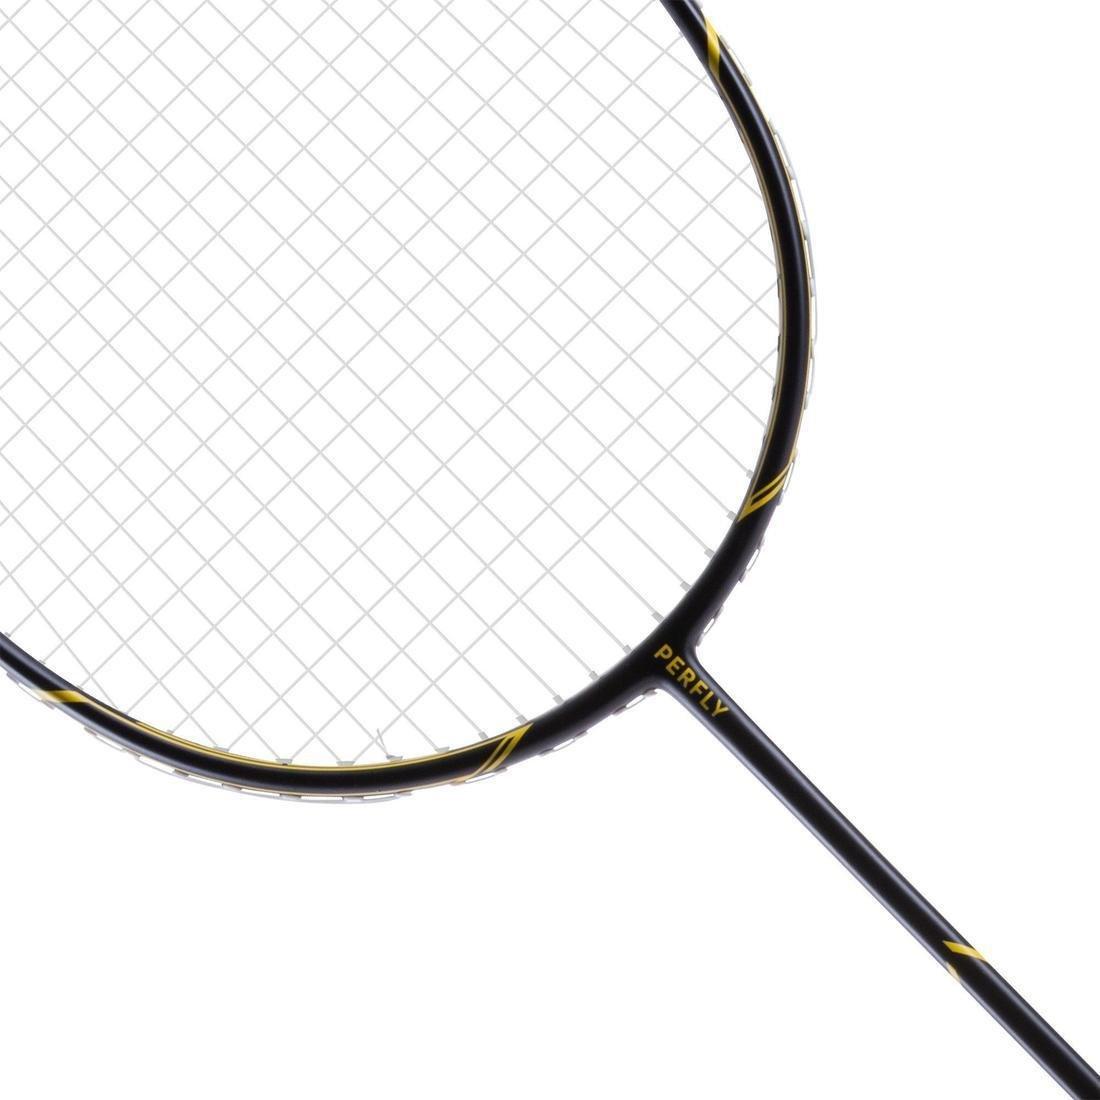 PERFLY - Adult Badminton Racket BR 500, Black